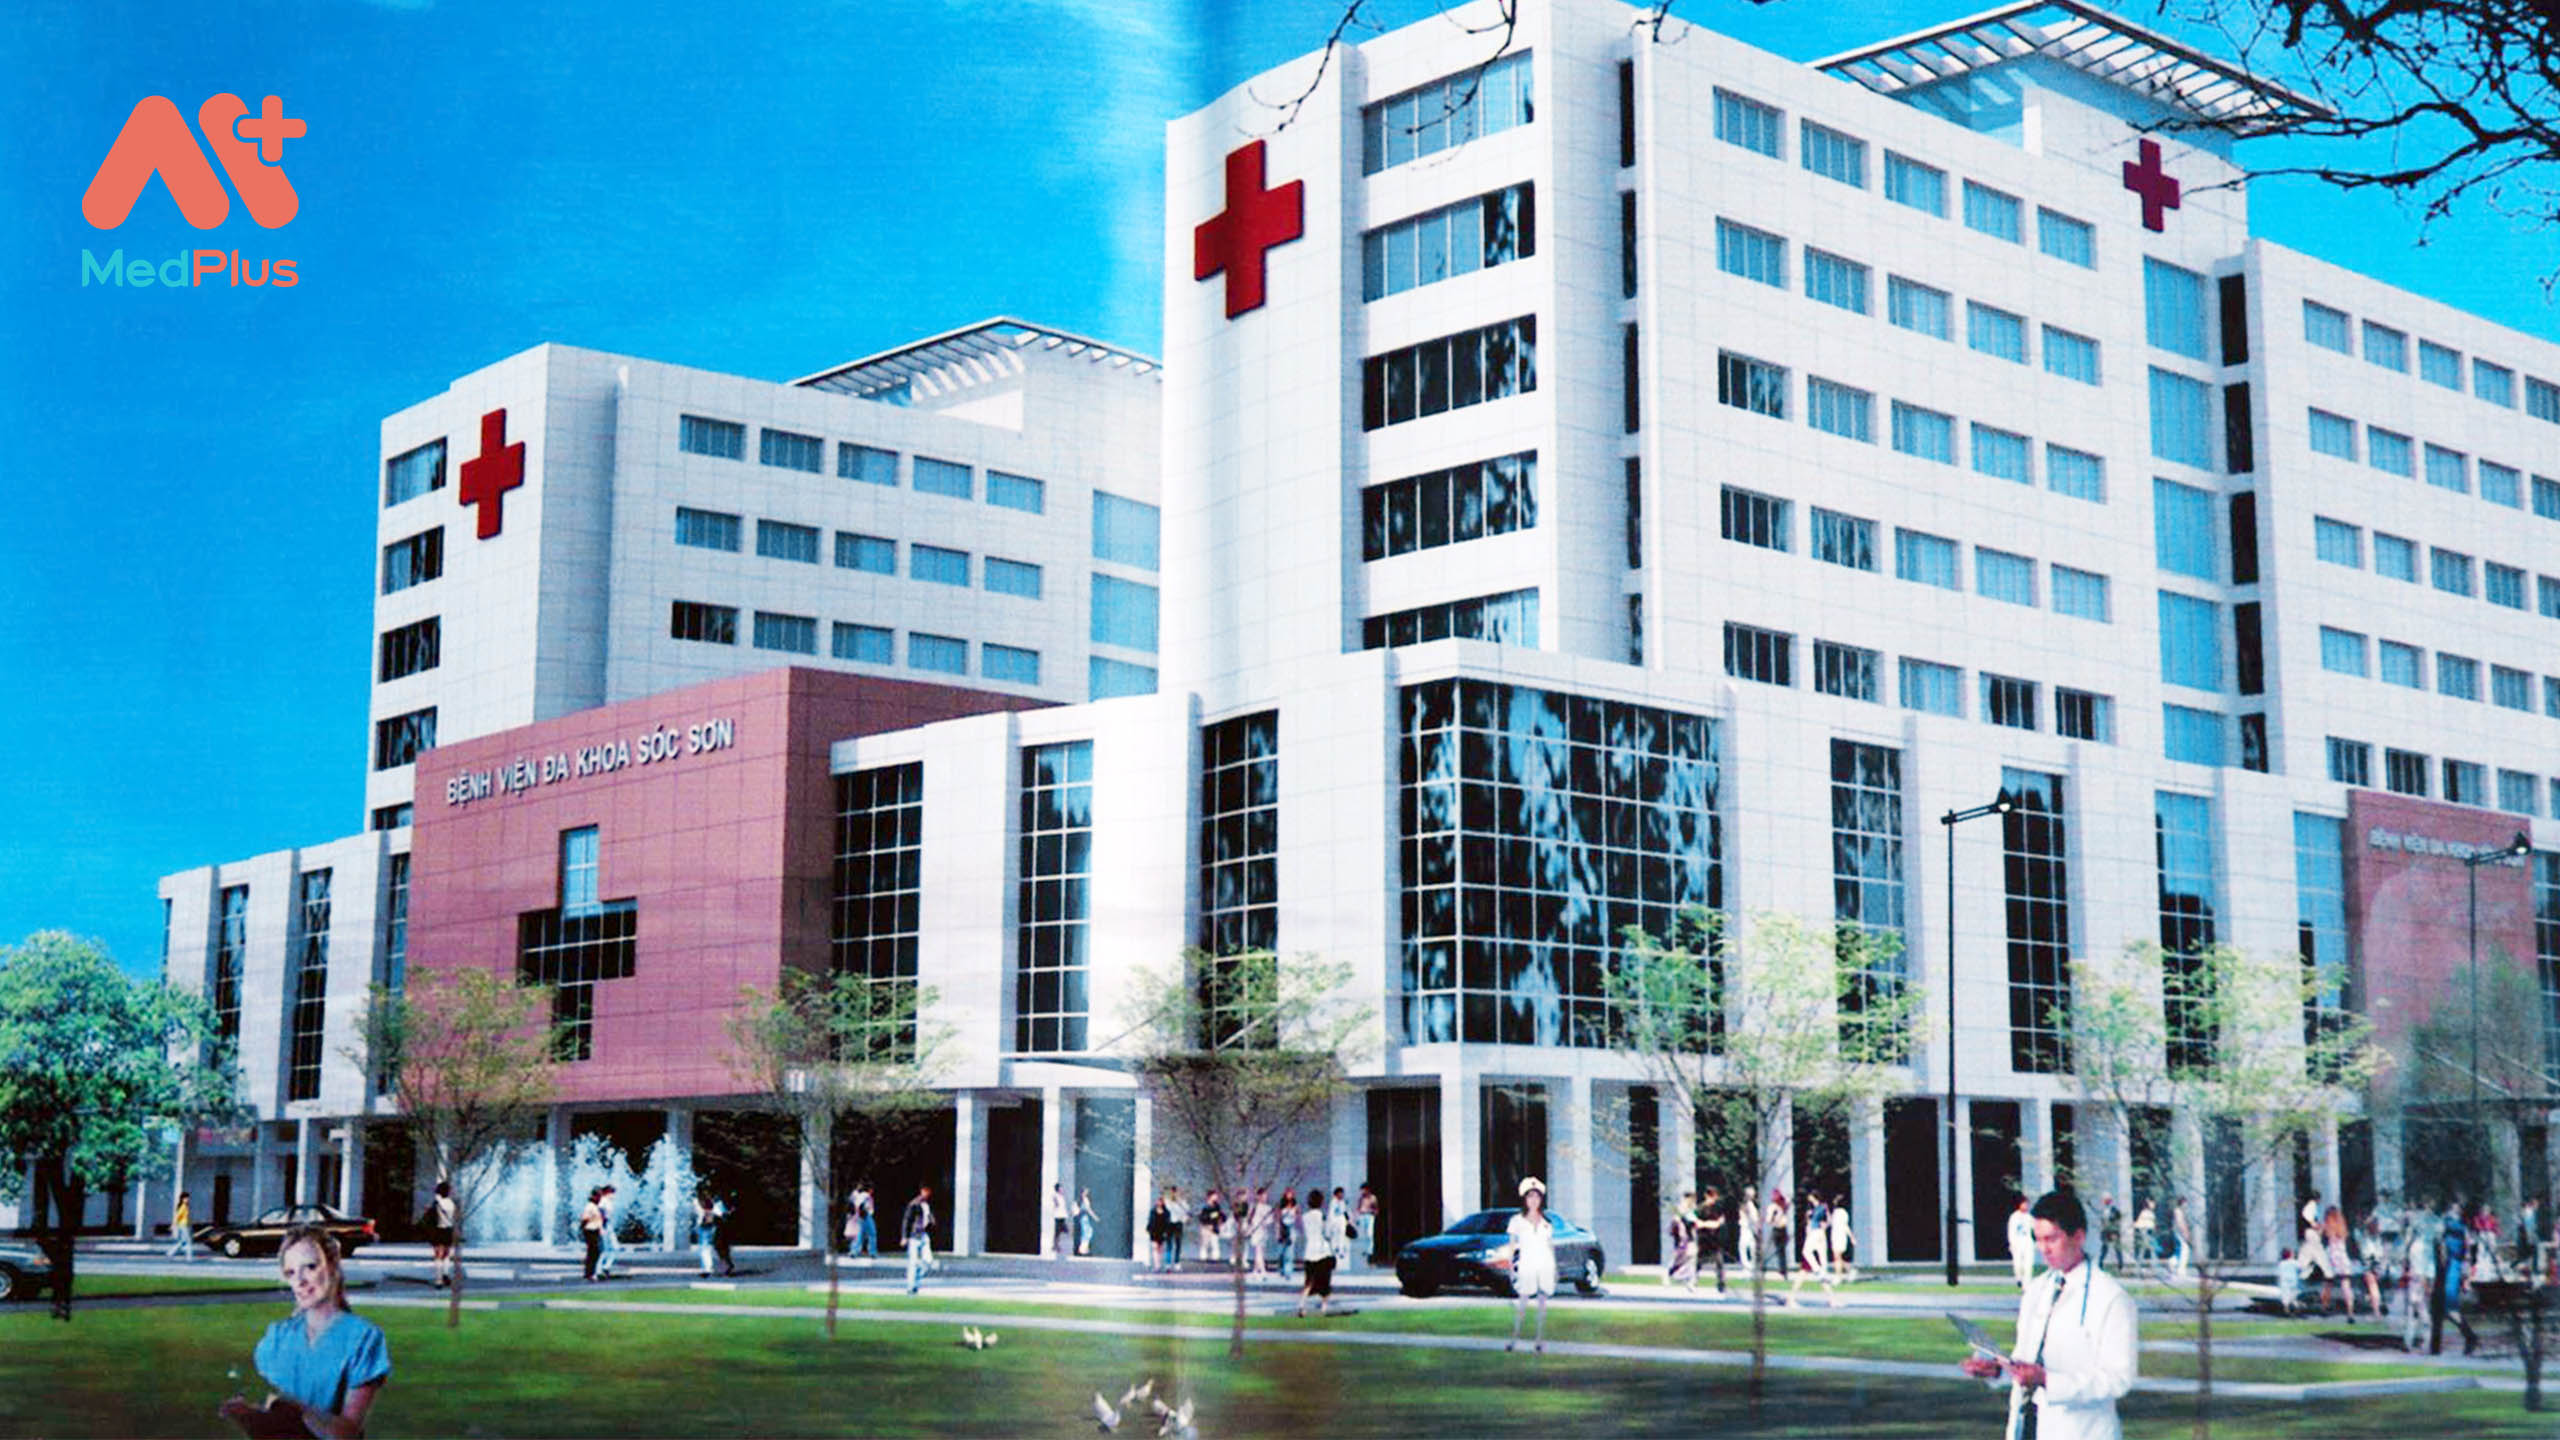 Bệnh viện đa khoa Sóc Sơn